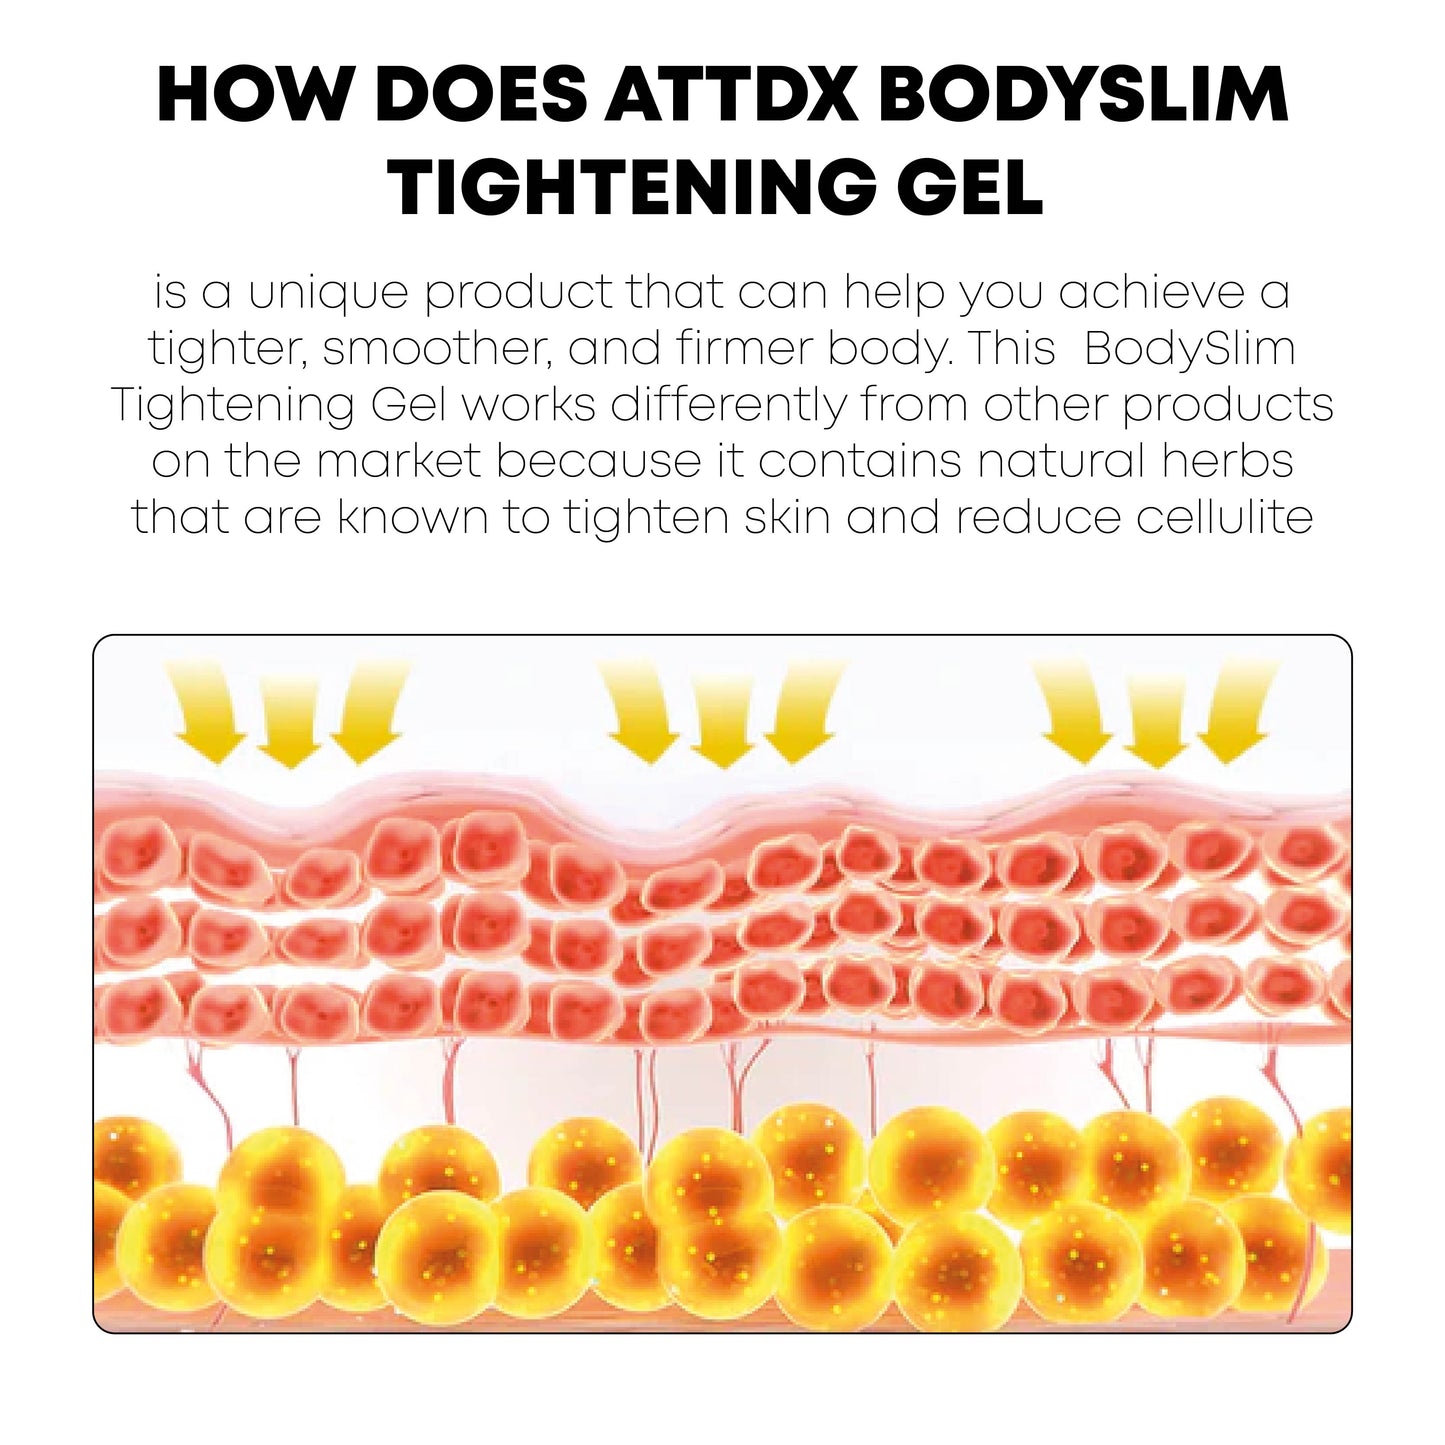 ATTDX BodySlim Tightening Gel